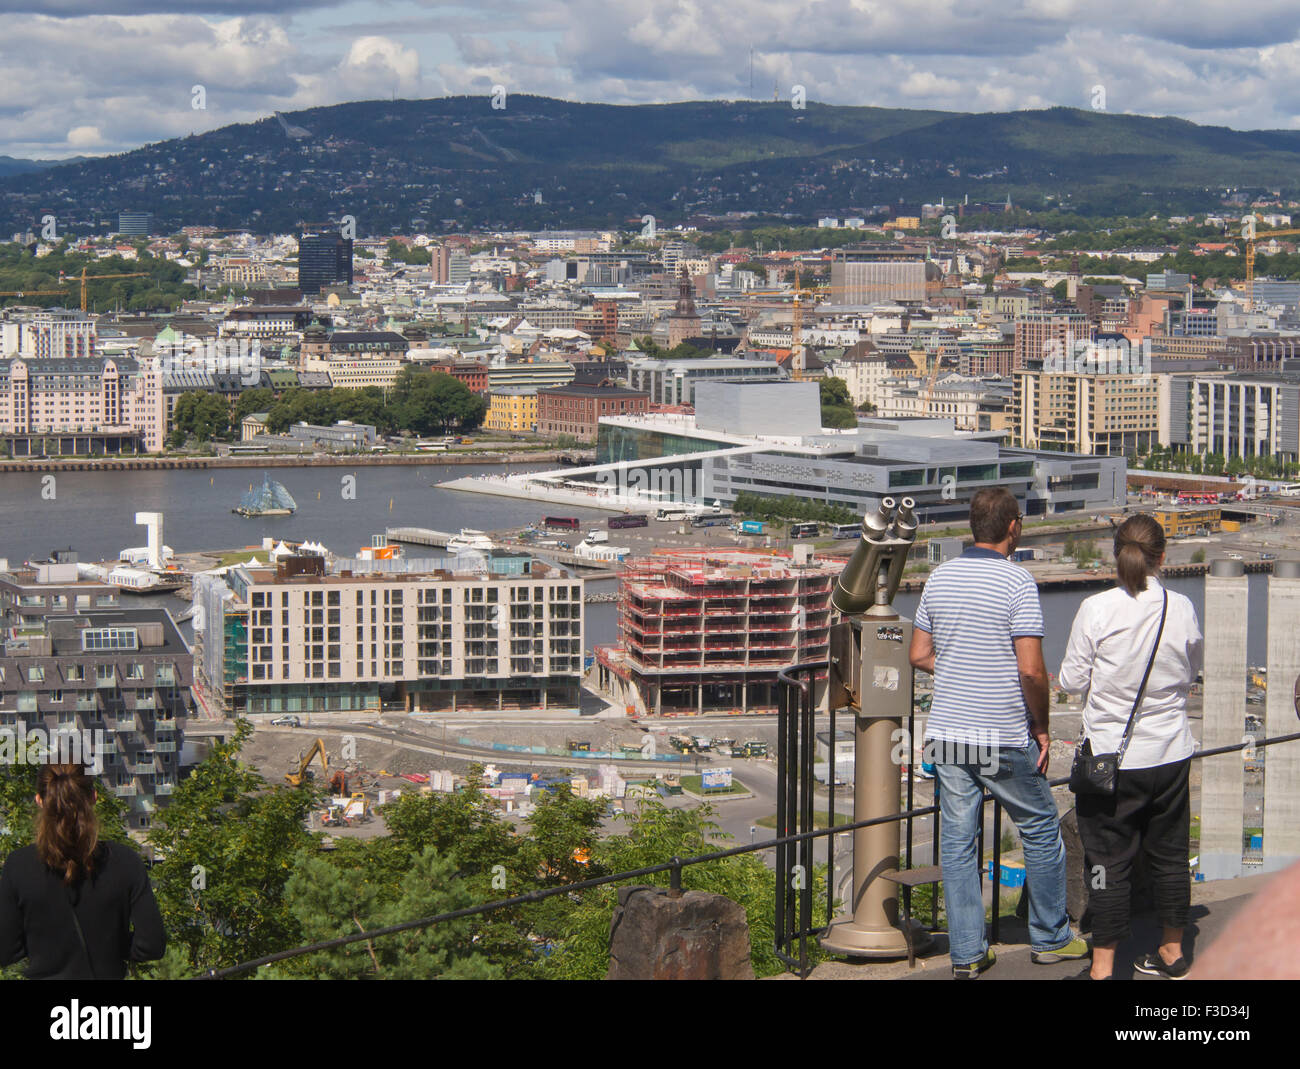 Dalla collina Ekeberg avrete una vista superba del centro di Oslo Norvegia, l'Opera house e il fiordo Foto Stock